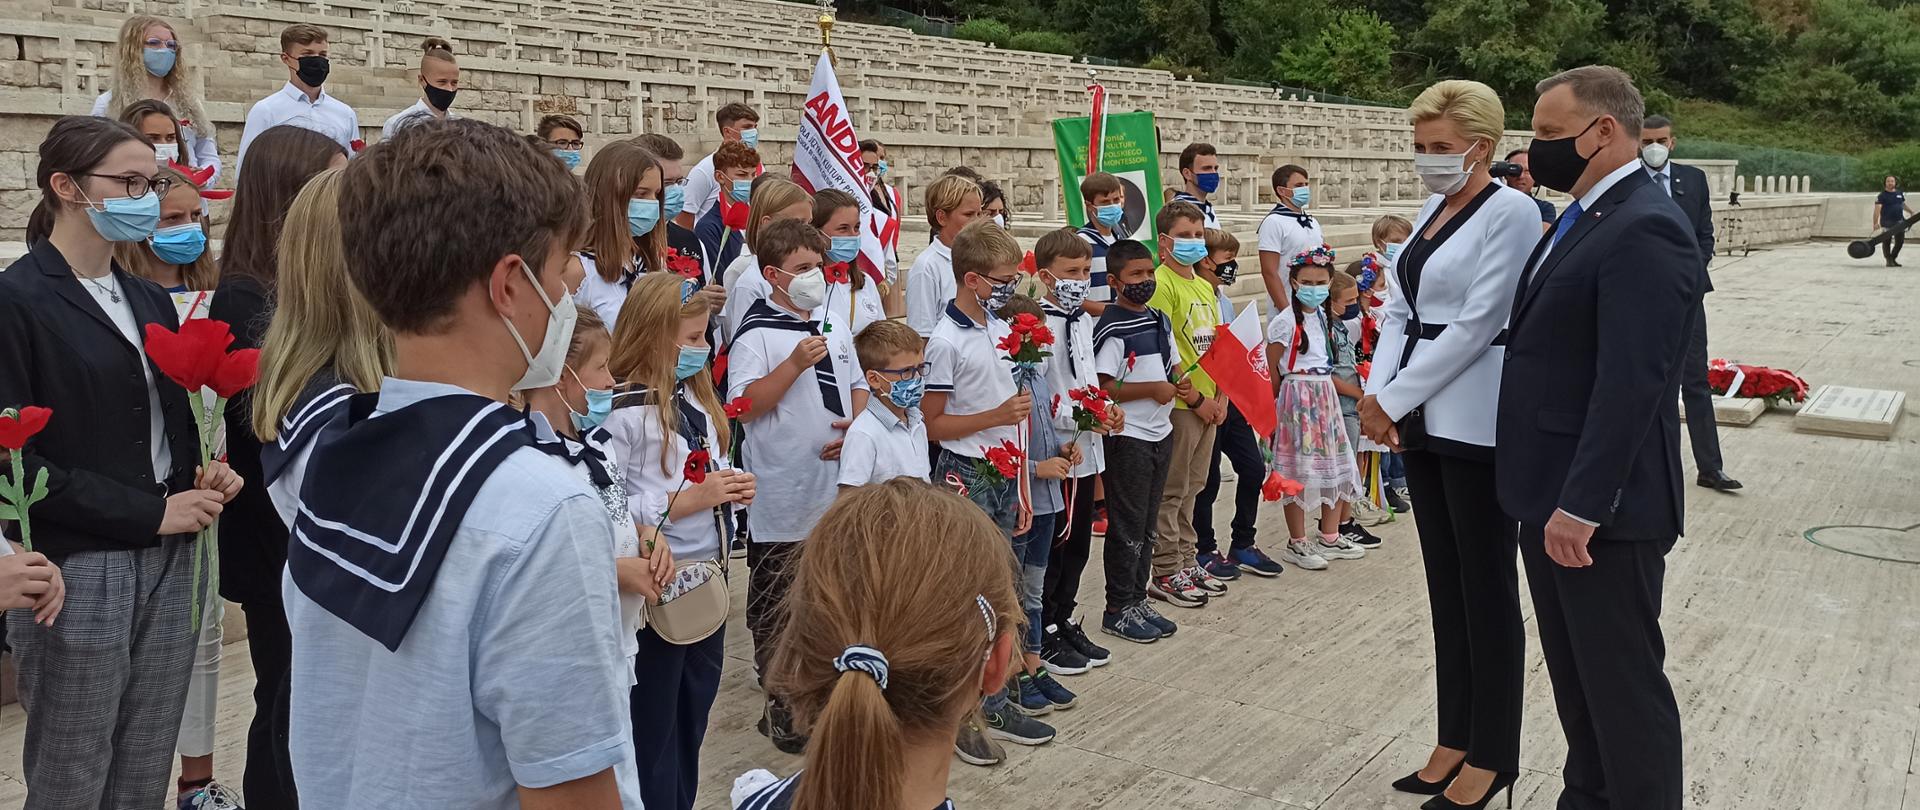 Rajd szkół polskich i polonijnych na Monte Cassino i do Piedimonte San Germano
